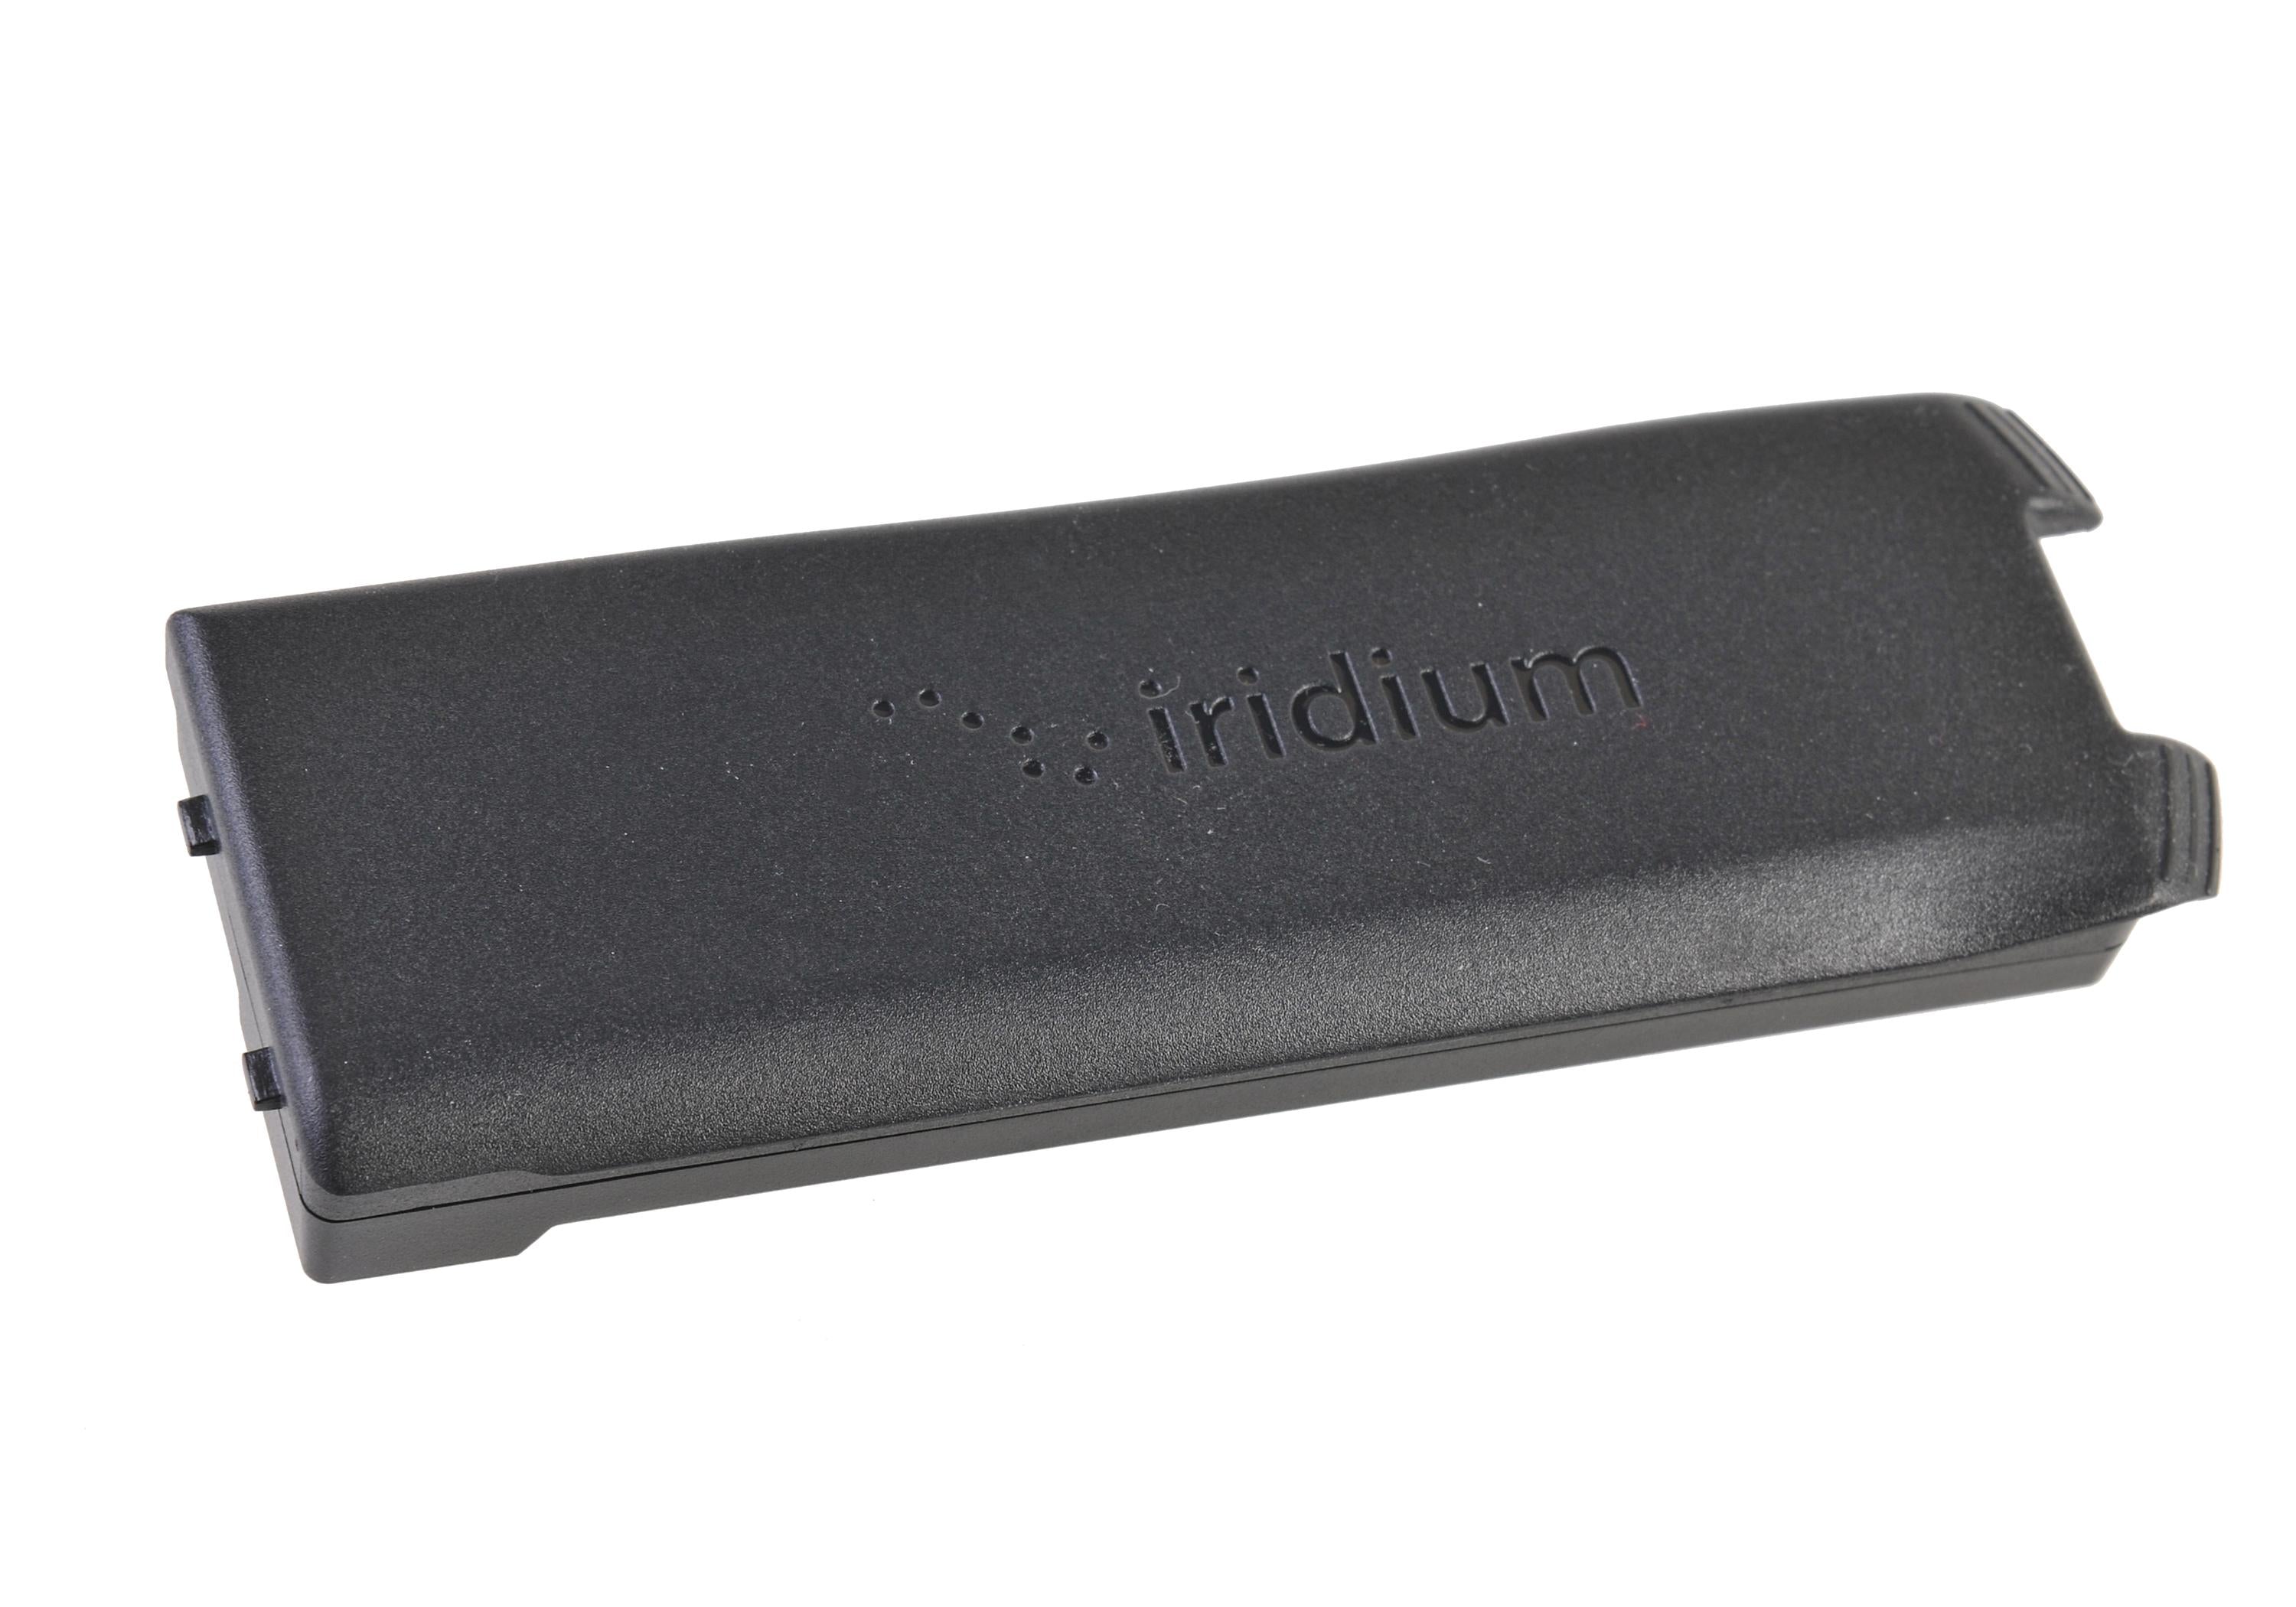 Iridium 9555 Satellite Phone High Capacity Batter